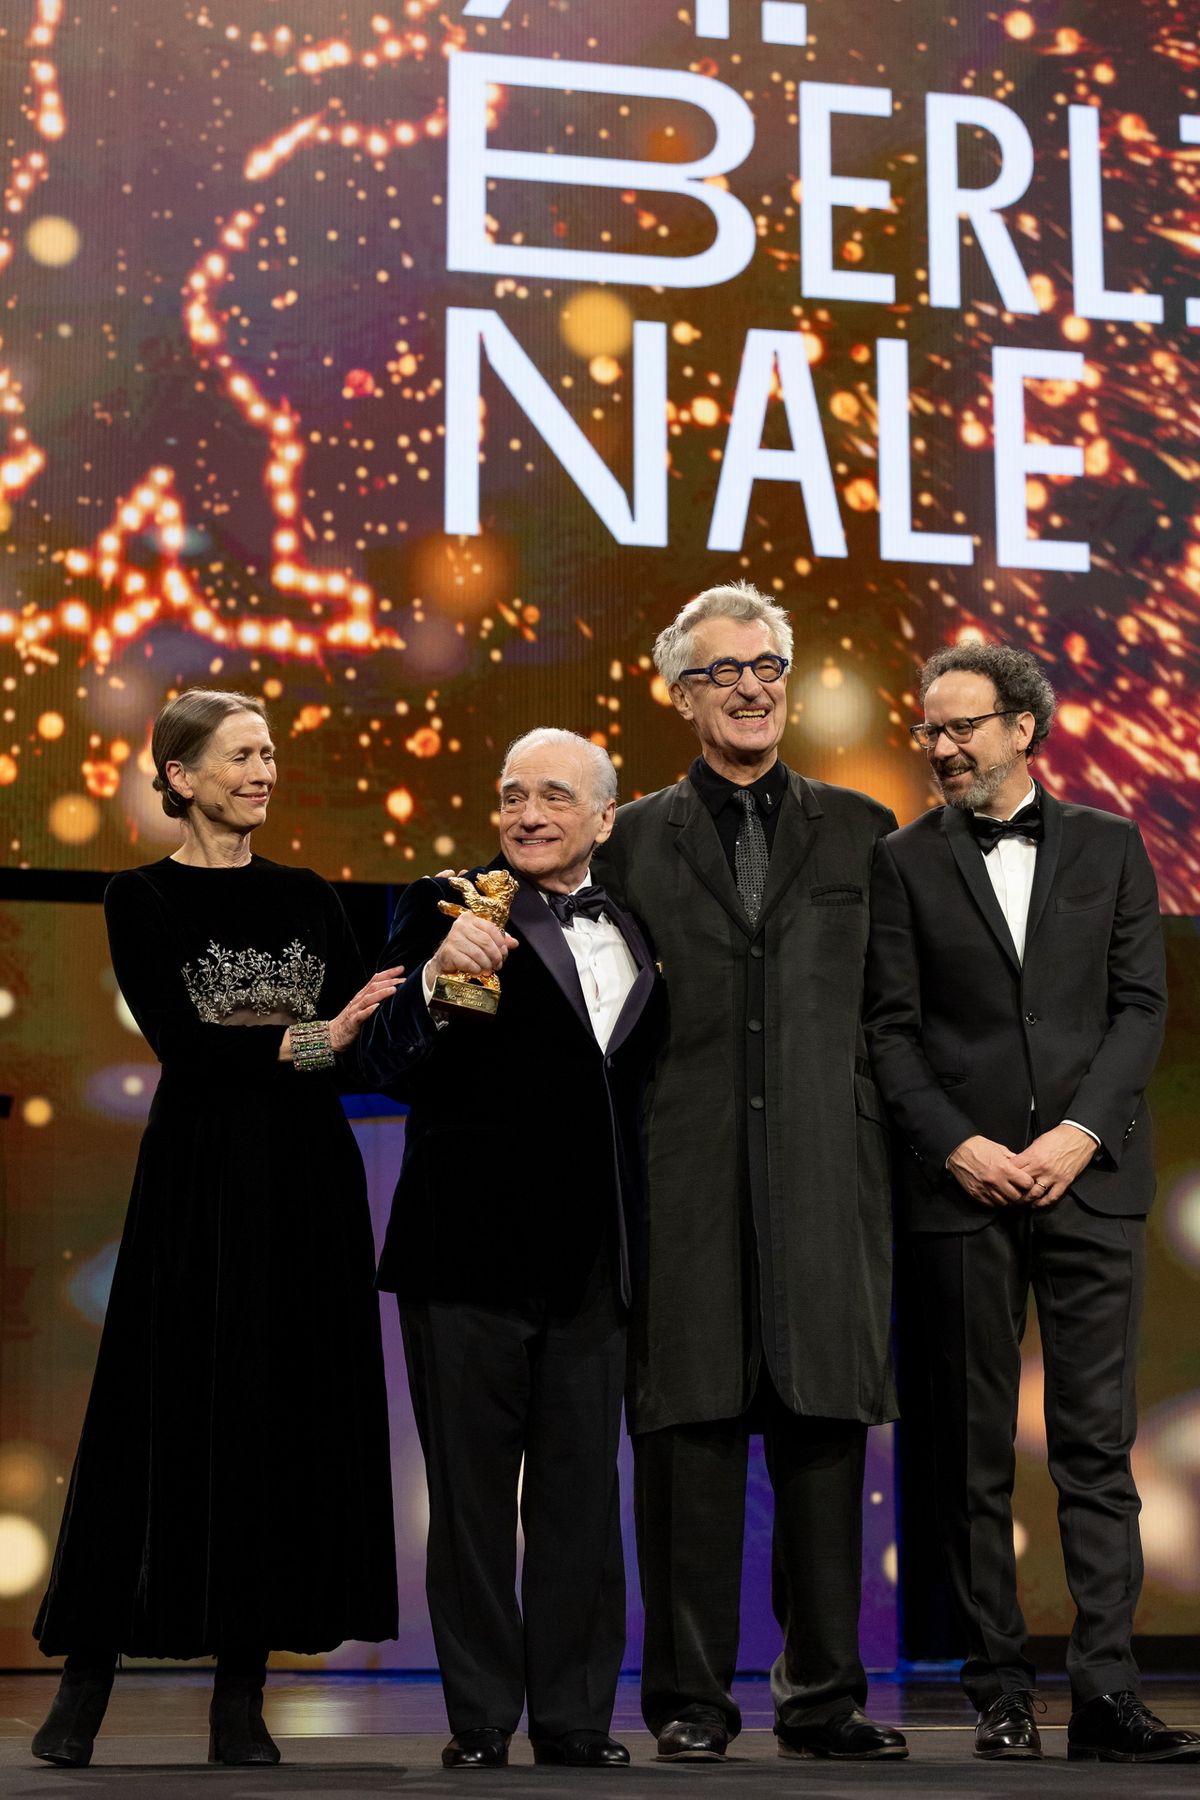 74. Berlinale'de Martin Scorsese'ye Yaşam Boyu Onur Ödülü (Honorary Golden Bear) sunuldu. Mariëtte Rissenbeek, Martin Scorsese, Wim Wenders ve Carlo Chatrian.

Fotoğraf: berlinale.de